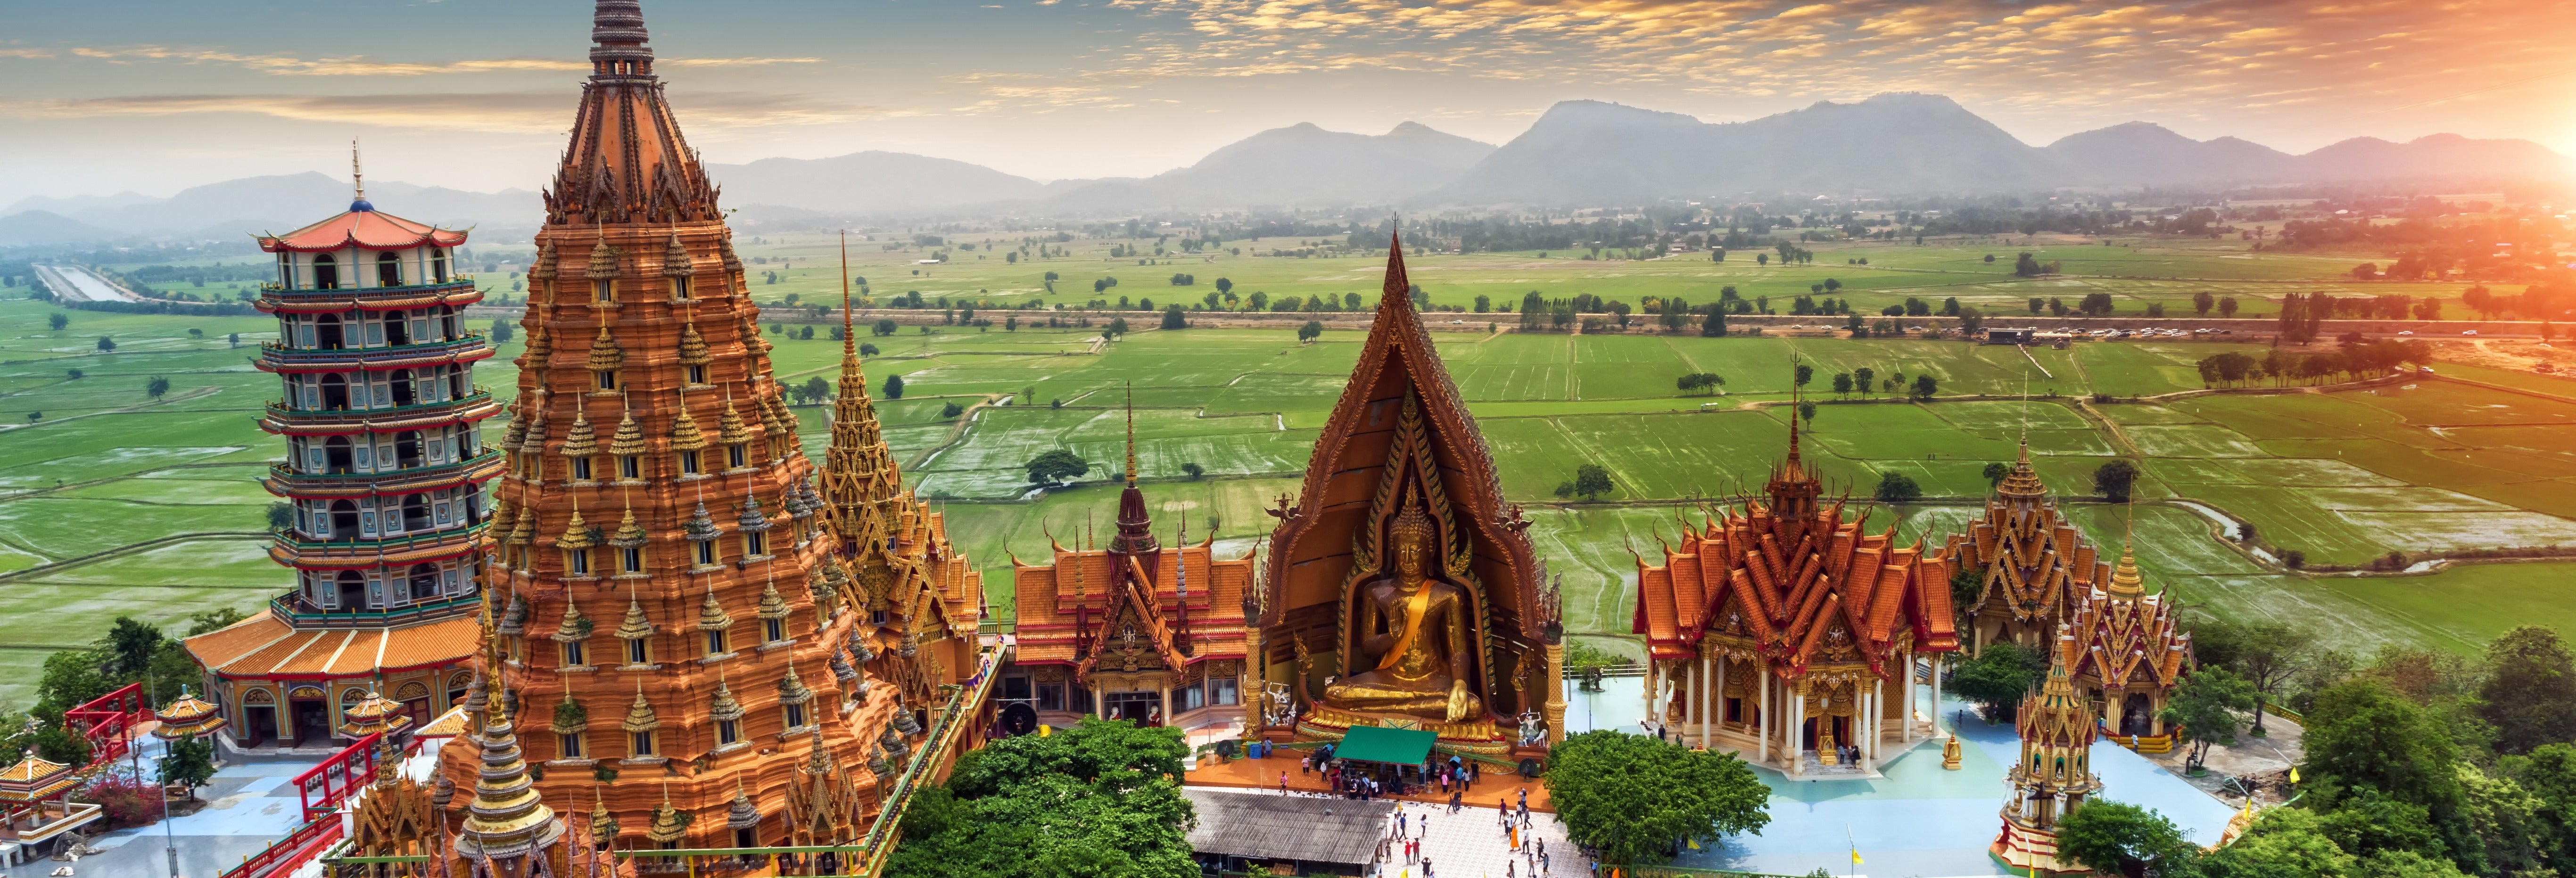 Tour de 16 días por lo mejor de Tailandia y Myanmar